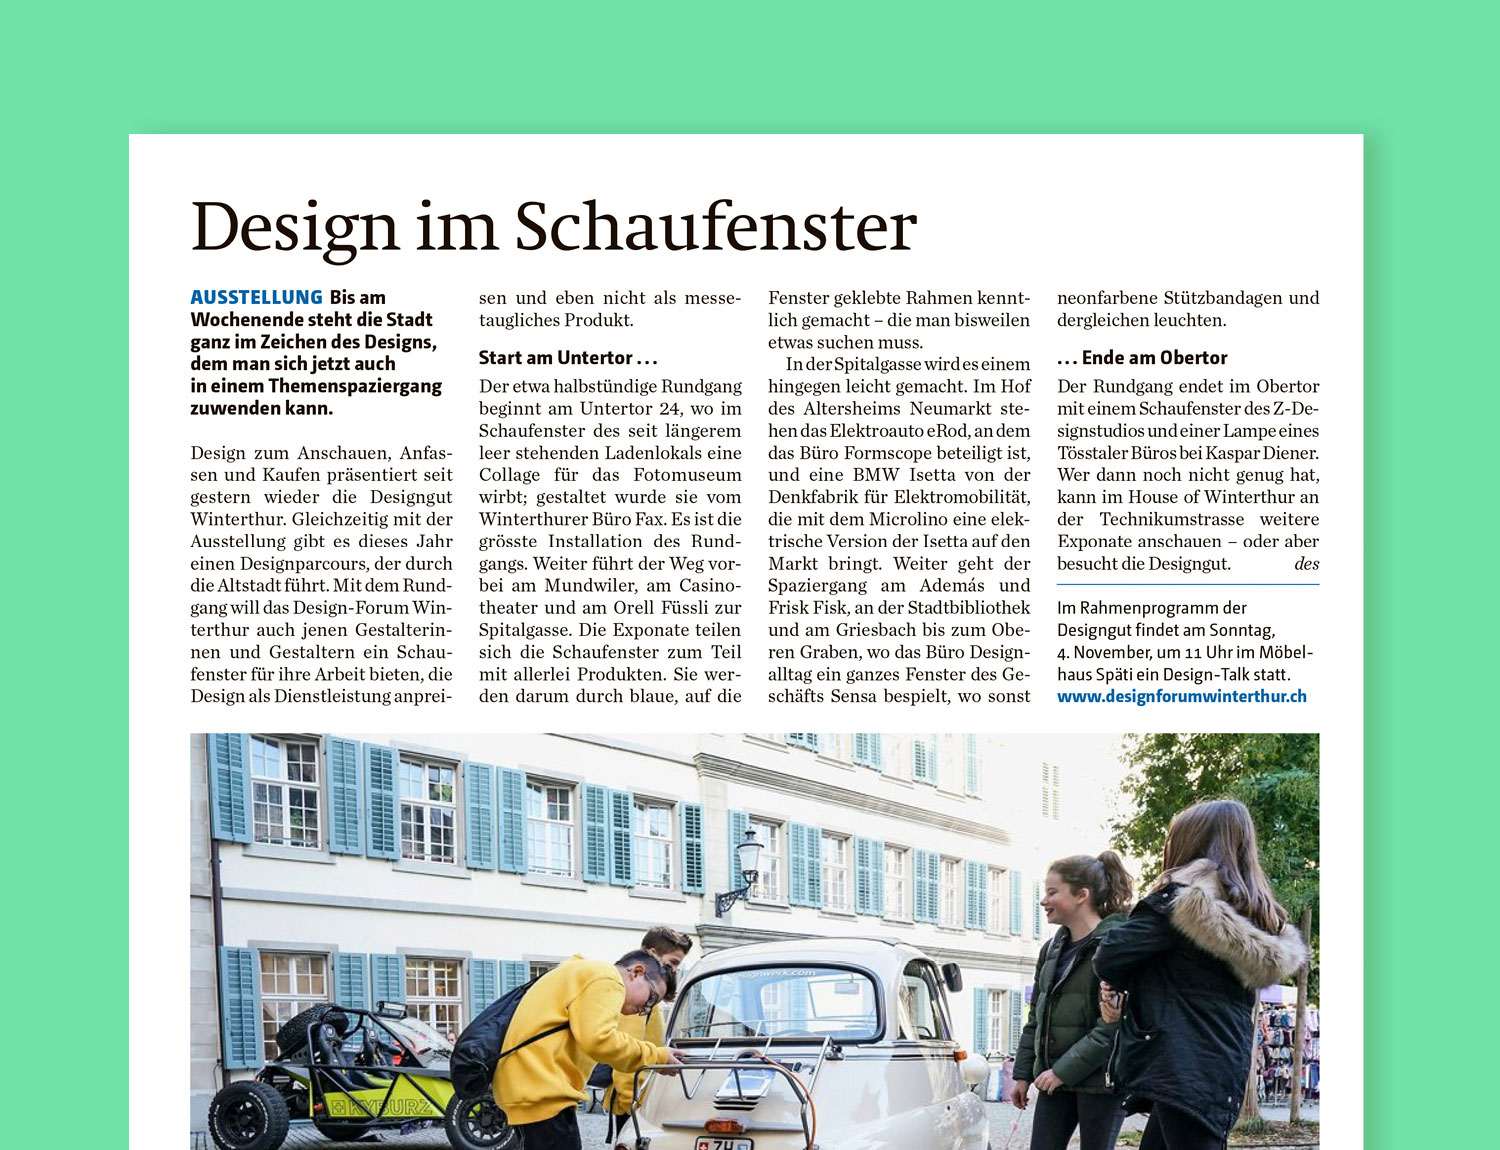 Artikel im Landboten zum Designparcours in Winterthur